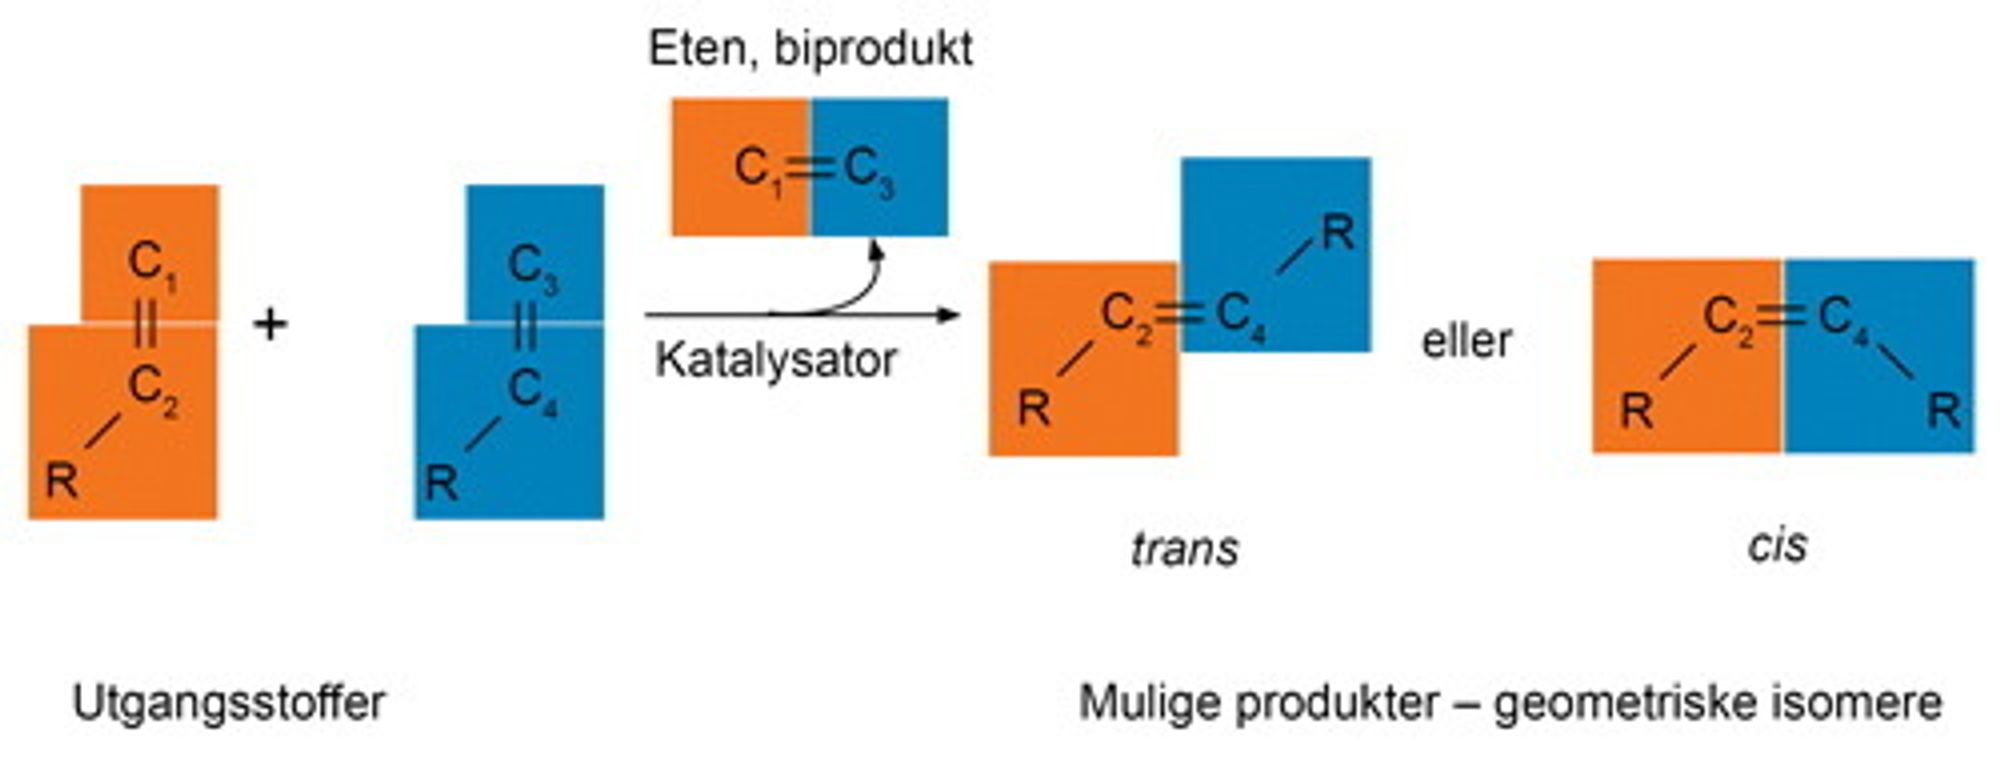 Ved olefinmetatese bytter halvdeler og danner nye alkener. Kjemiske grupper (R) som kan være korte eller lange kjeder eller ringstrukturer, er koblet til karboatomene (C) i den umetta bindingen. I produktet kan de enten være på forskjellig side av bindingen (trans-produkt), eller på samme side (cis-produkt). Katalysatoren påvirker hvor mye som blir dannet av hvert av produktene.  